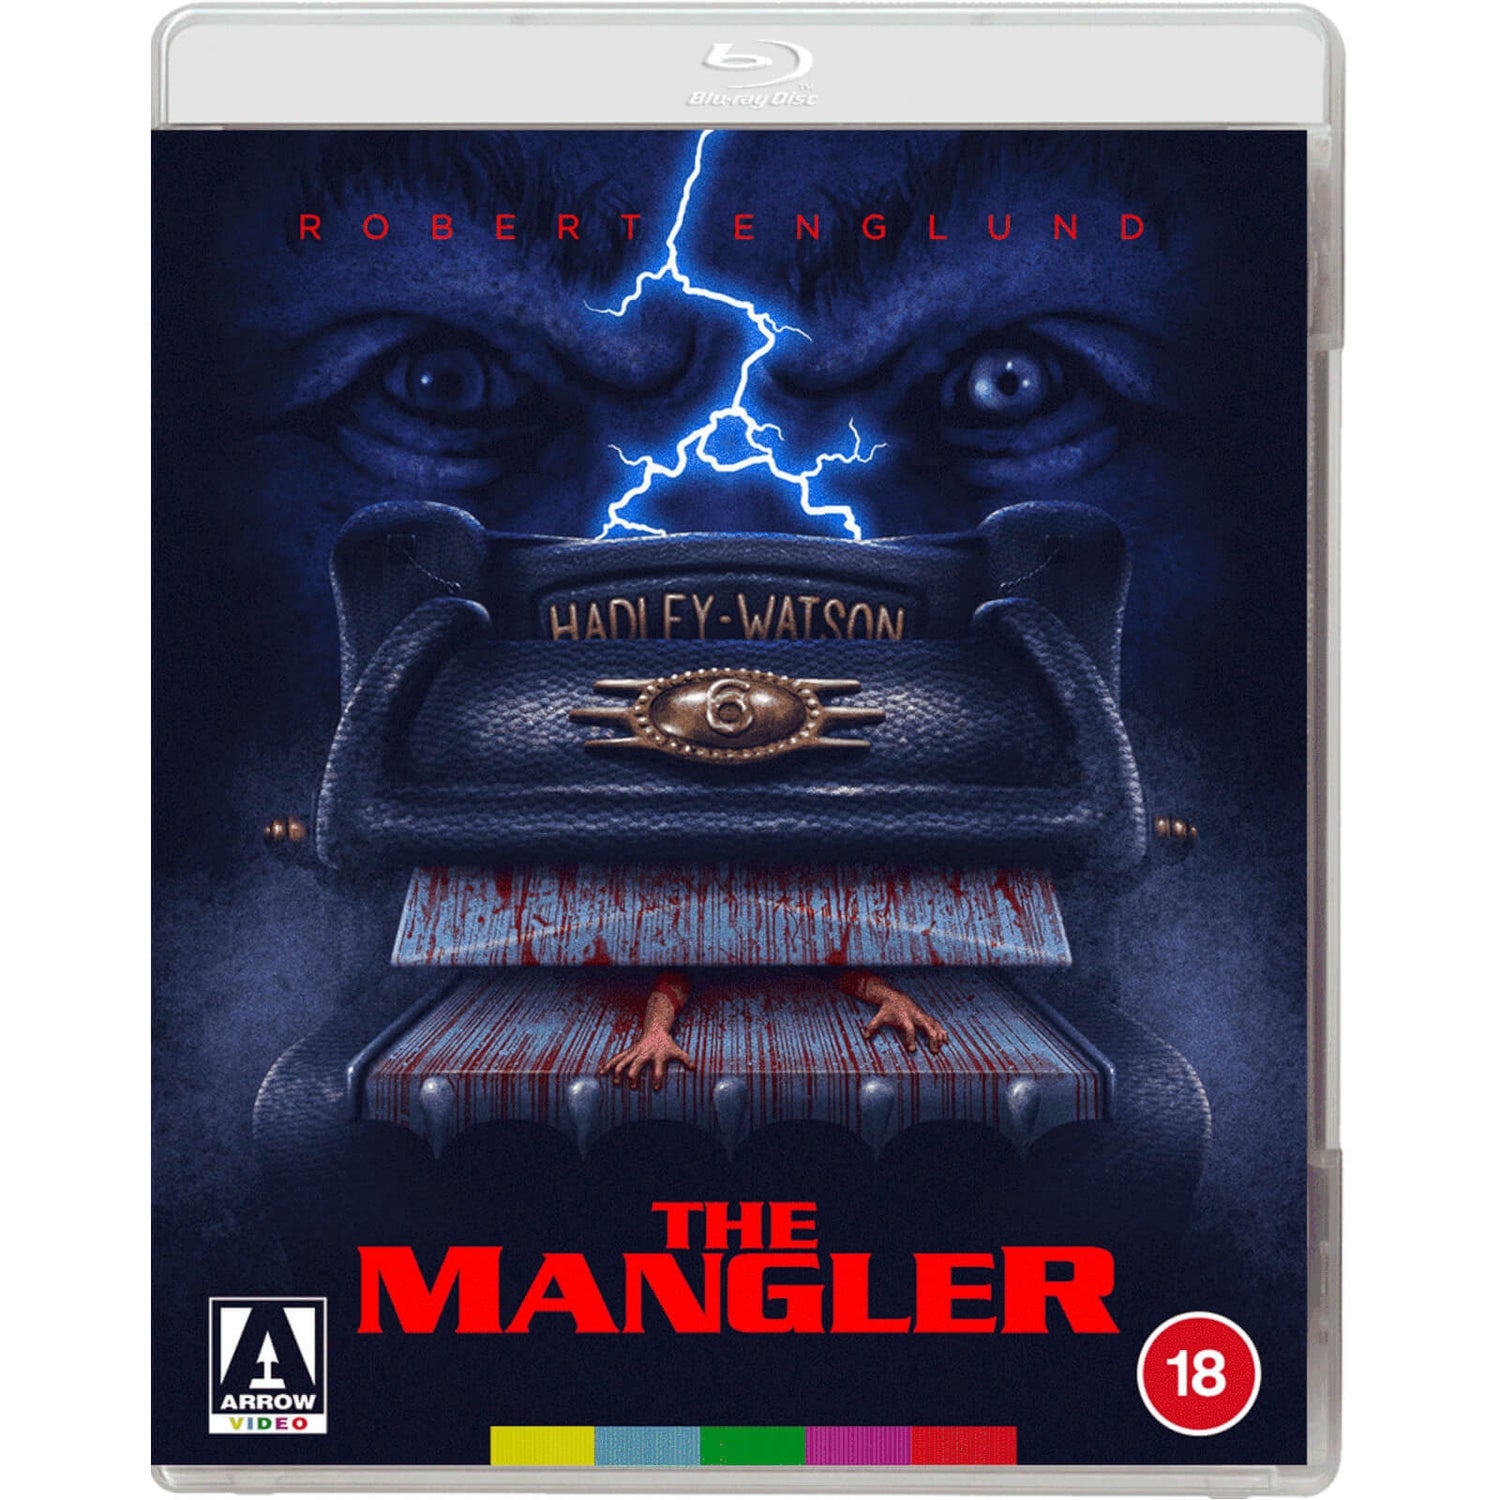 The Mangler 